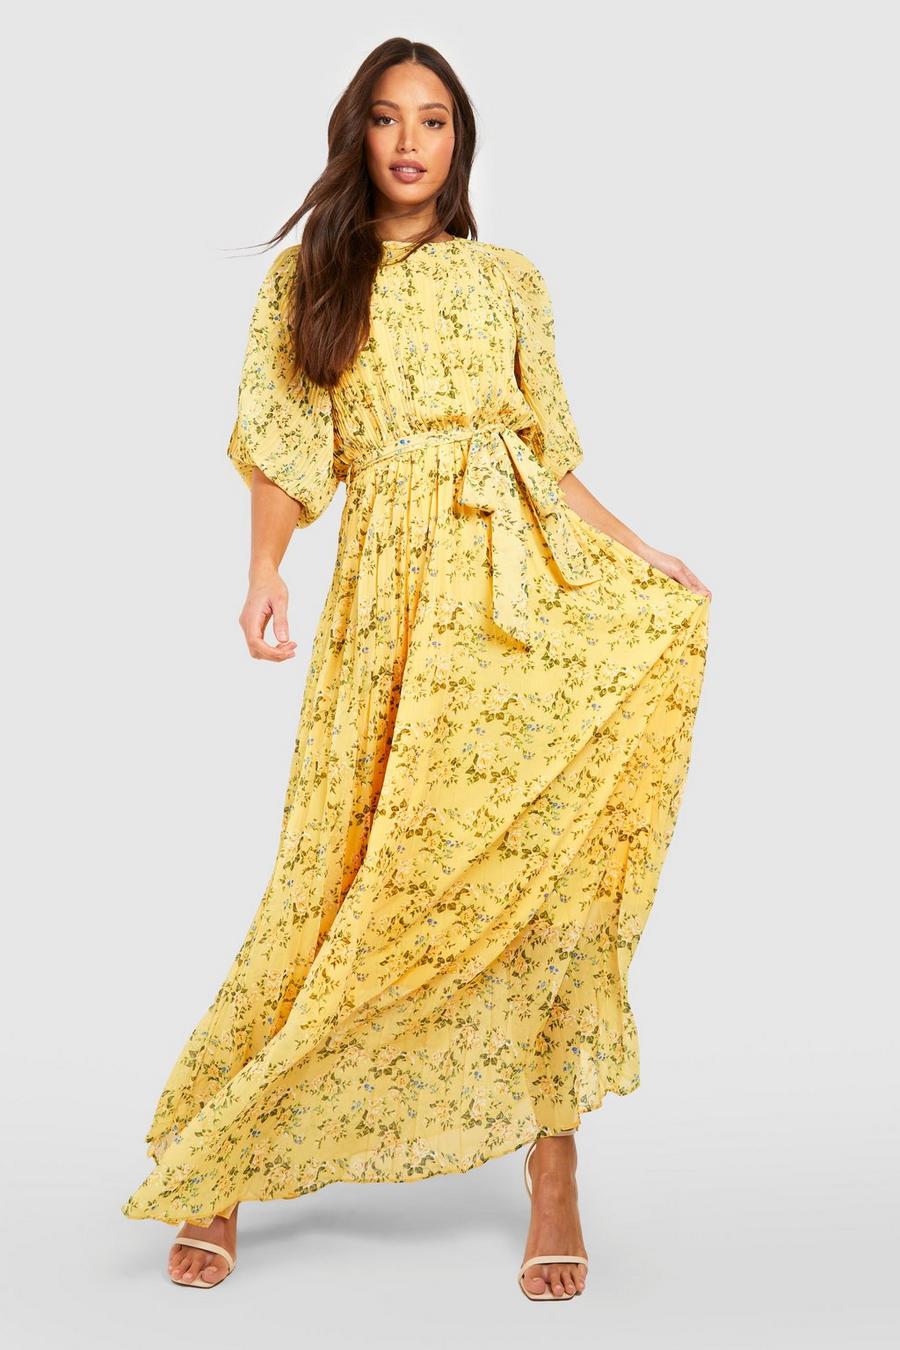 צהוב שמלת מידי פרחונית עם שרוולים תפוחים וקפלים, לנשים גבוהות image number 1